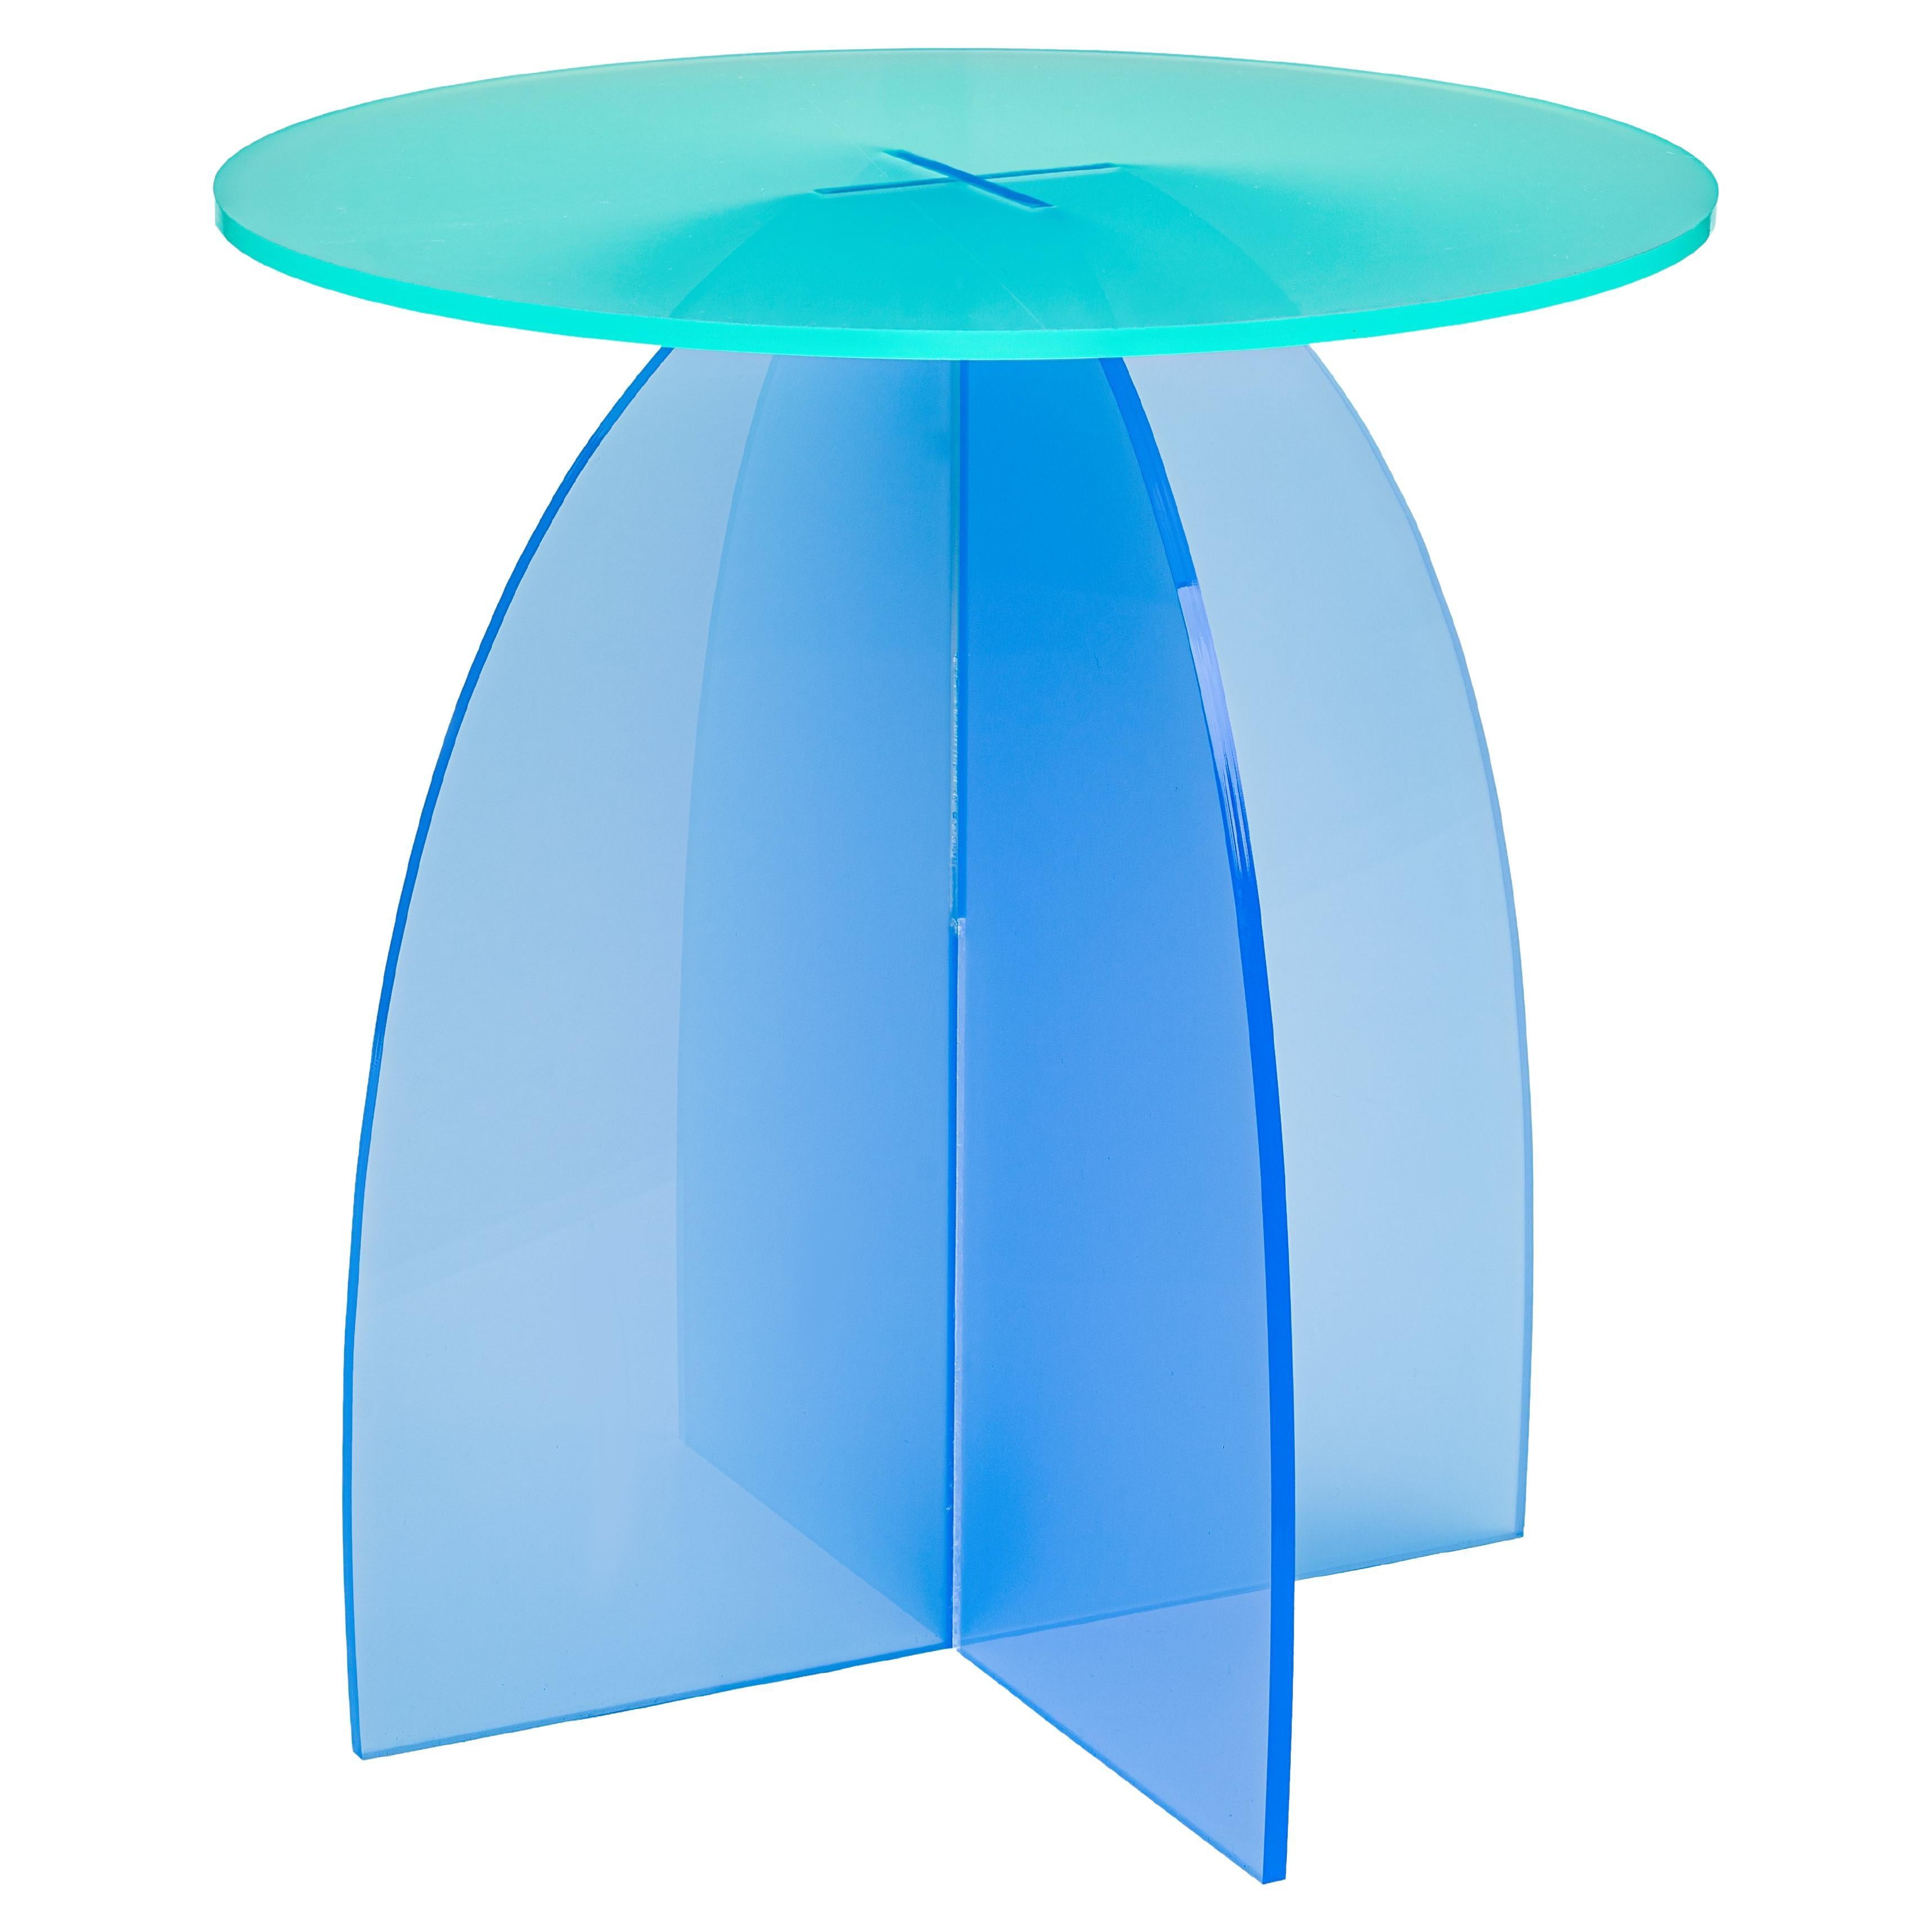 Tables d'appoint circulaires en acrylique azur, transparentes, Carnevale Studio